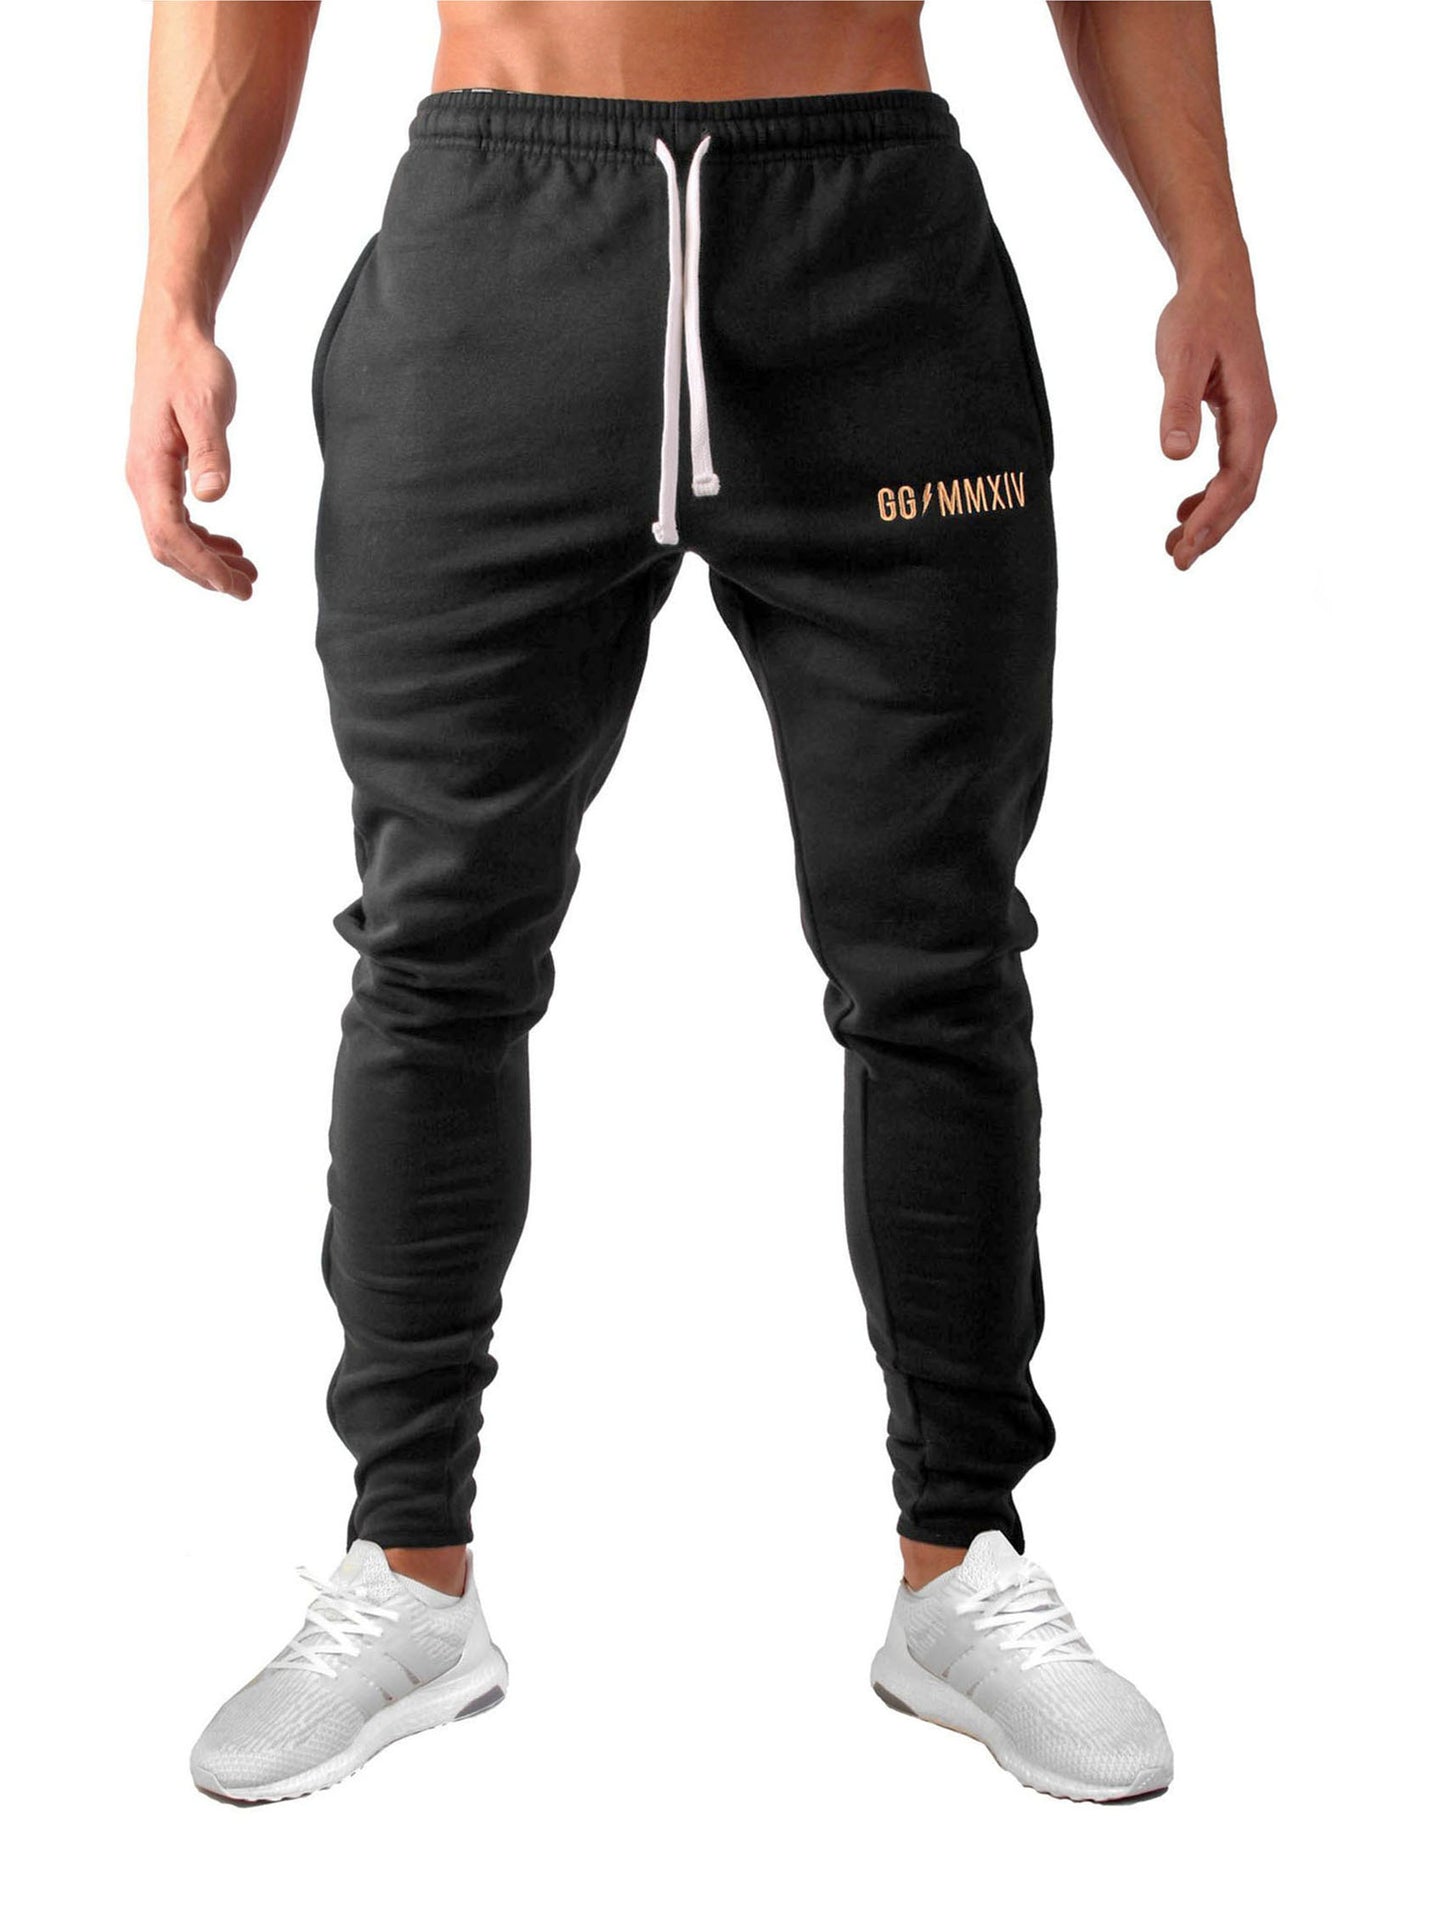 Schwarze Fitness Pants von Gym Generation mit elegantem goldenen Design für Training und Streetwear